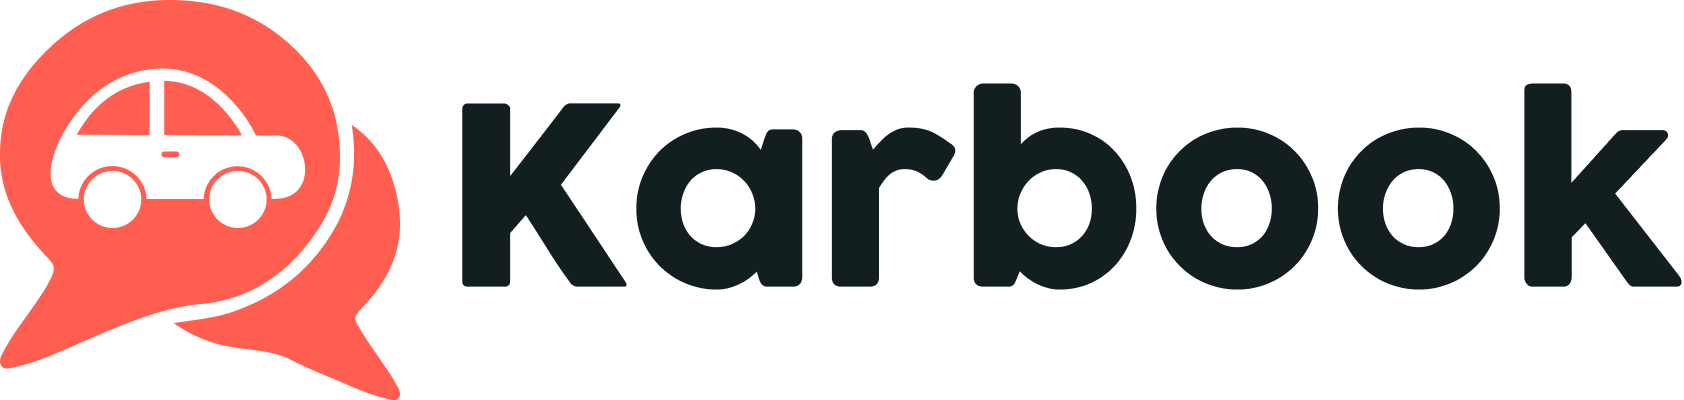 Karbook Logo